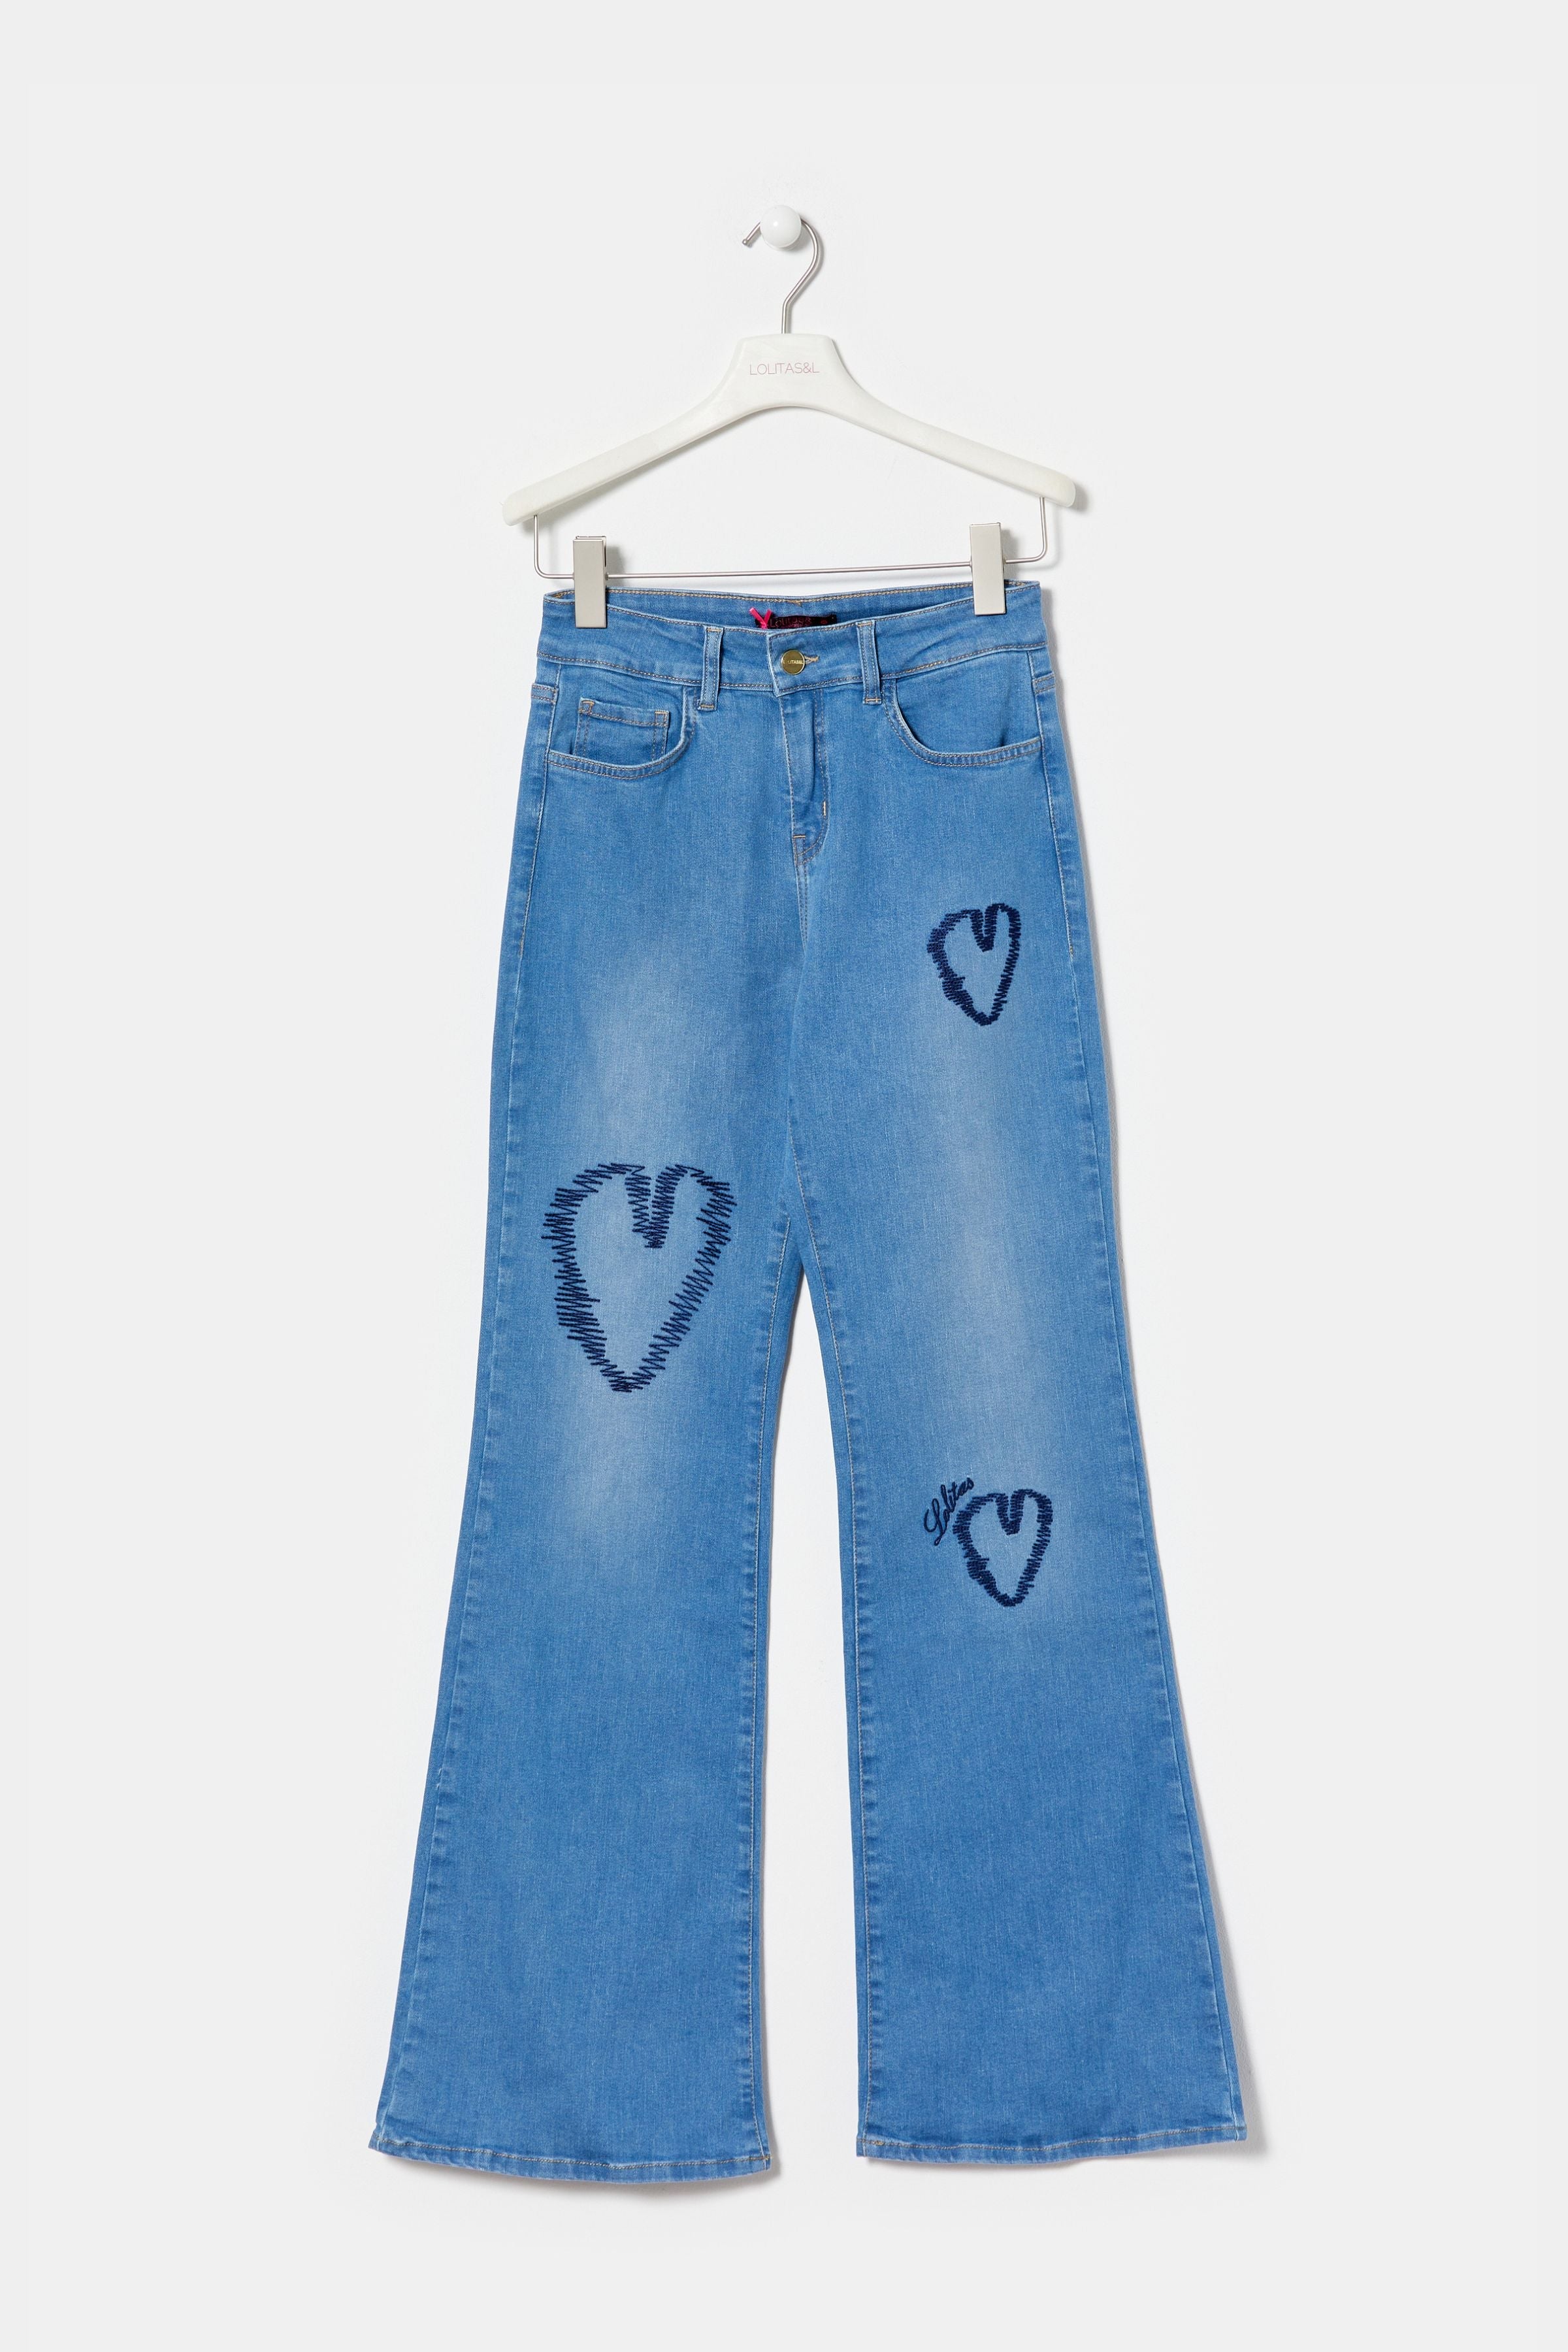 Pantalon vaquero azul corazones bordados con cinco bolsillos LolitasyL - lolitasyl.com